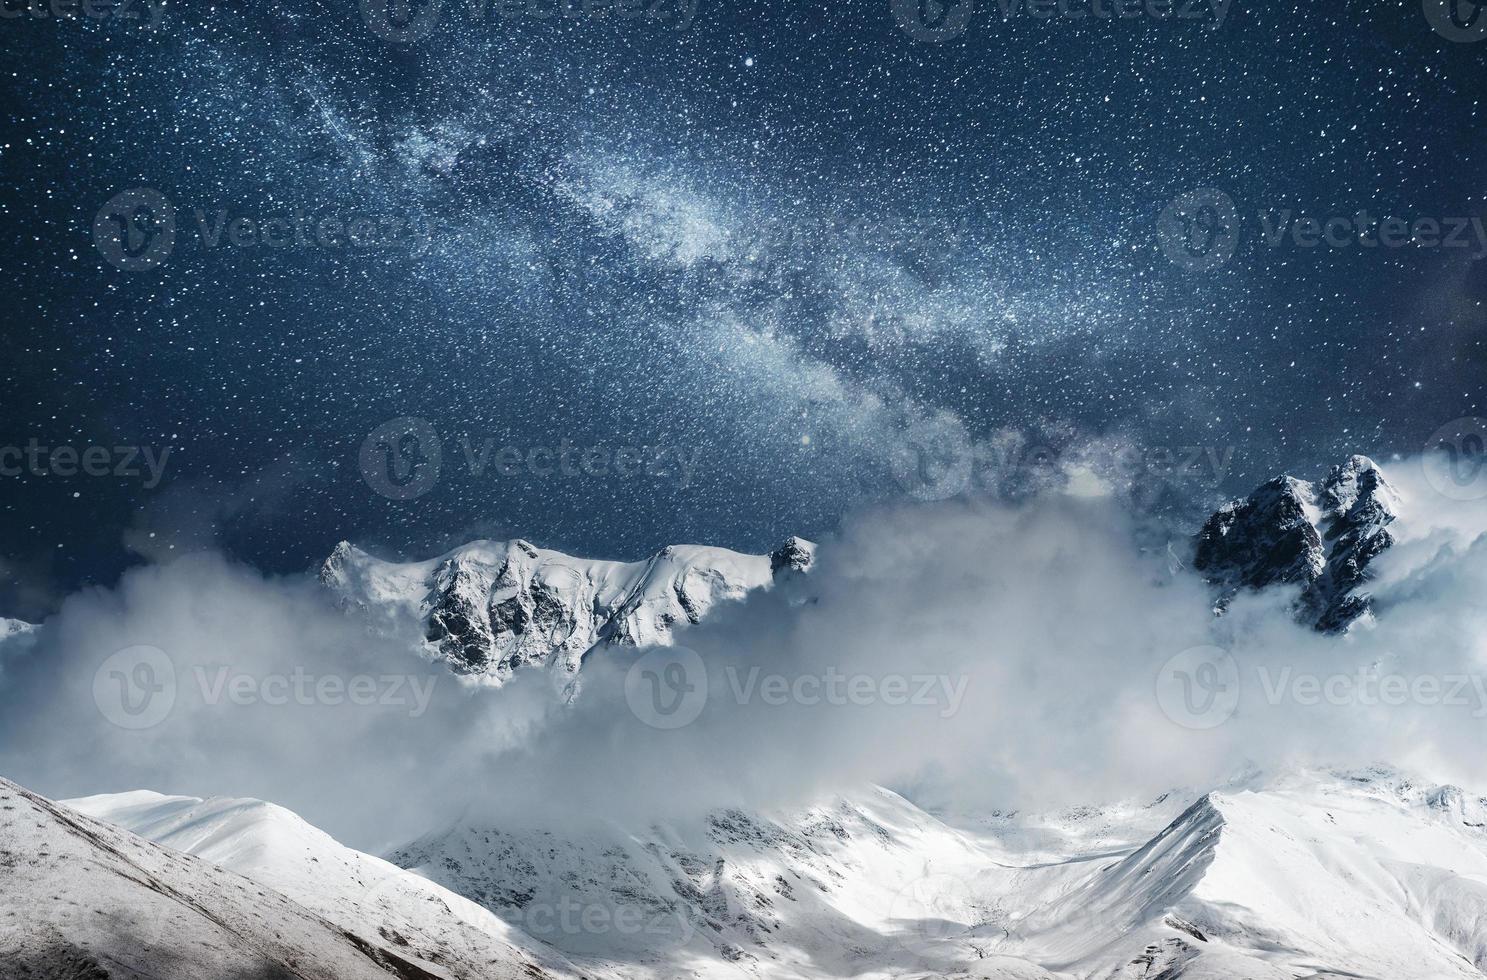 céu estrelado fantástico. nevoeiro espesso no goulet da passagem da montanha. Geórgia, Svaneti. Europa. montanhas do cáucaso foto